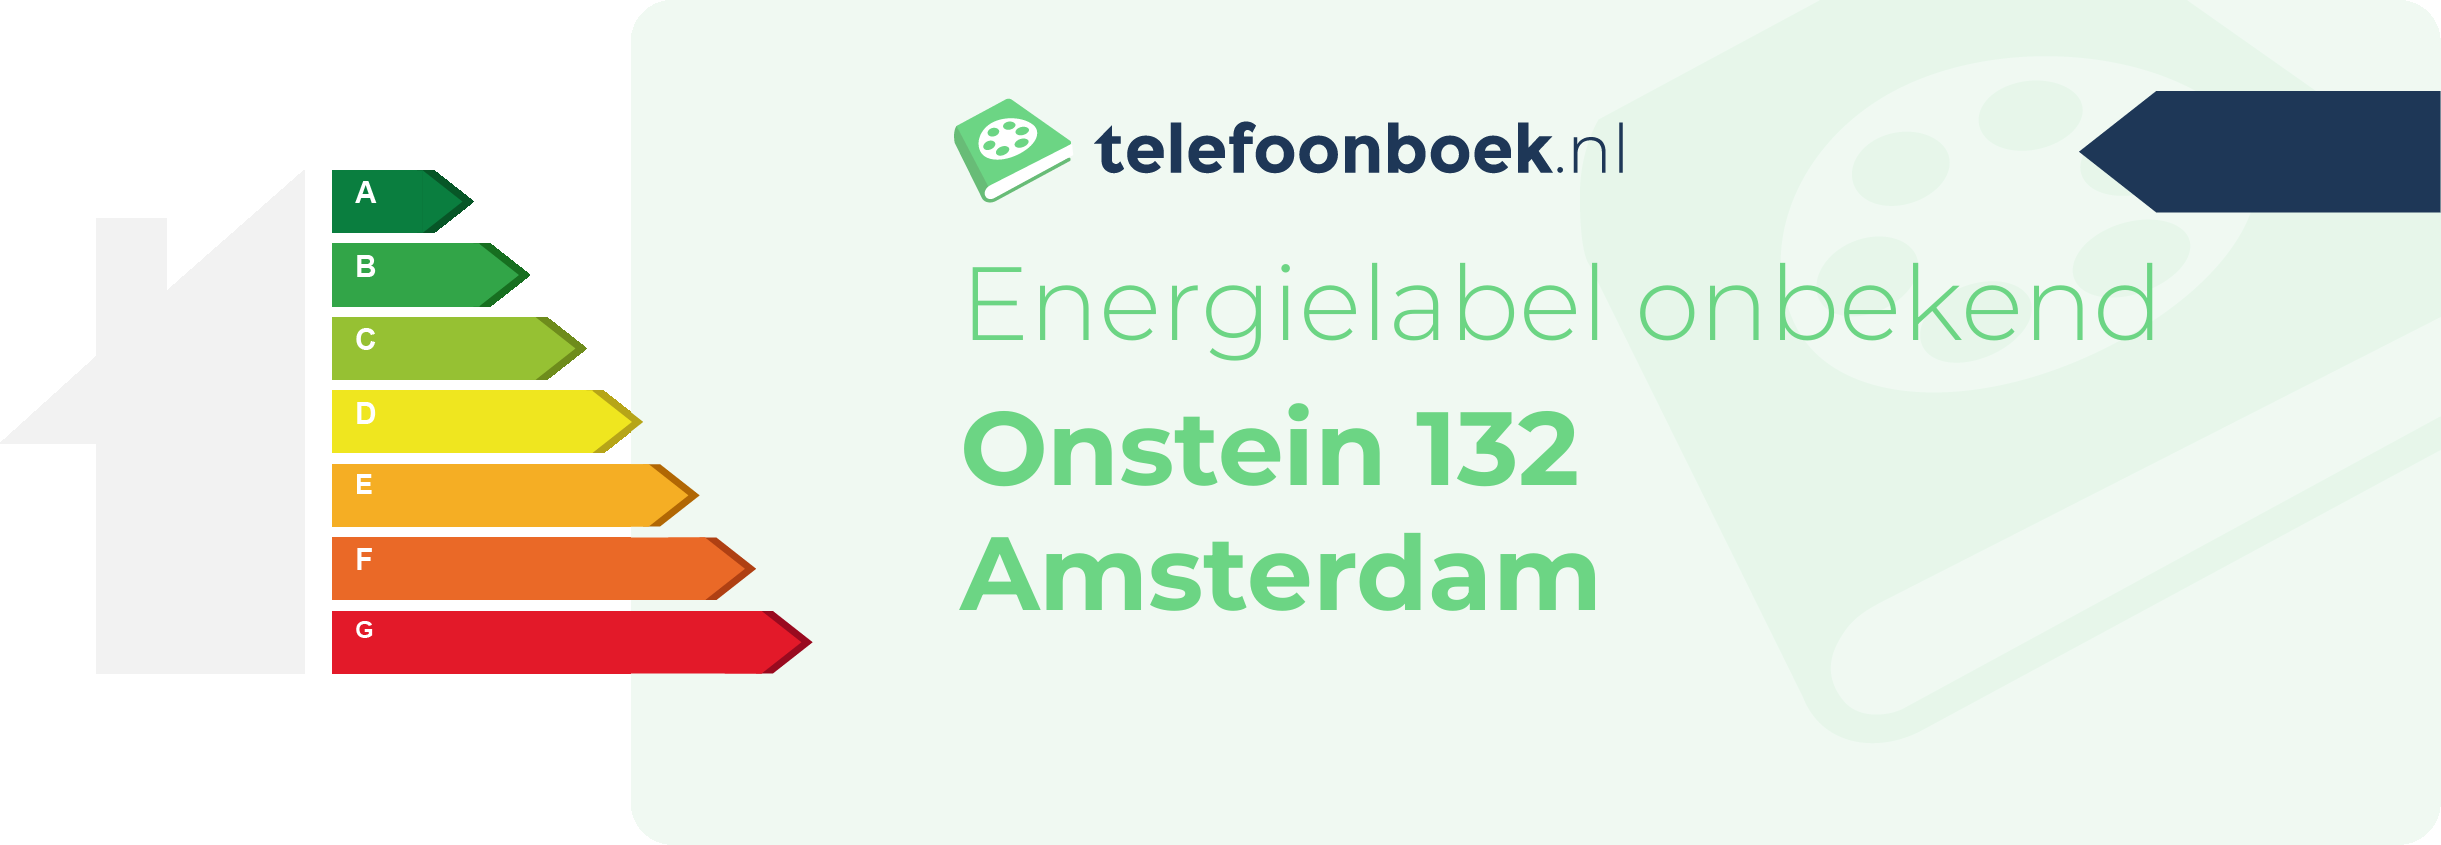 Energielabel Onstein 132 Amsterdam